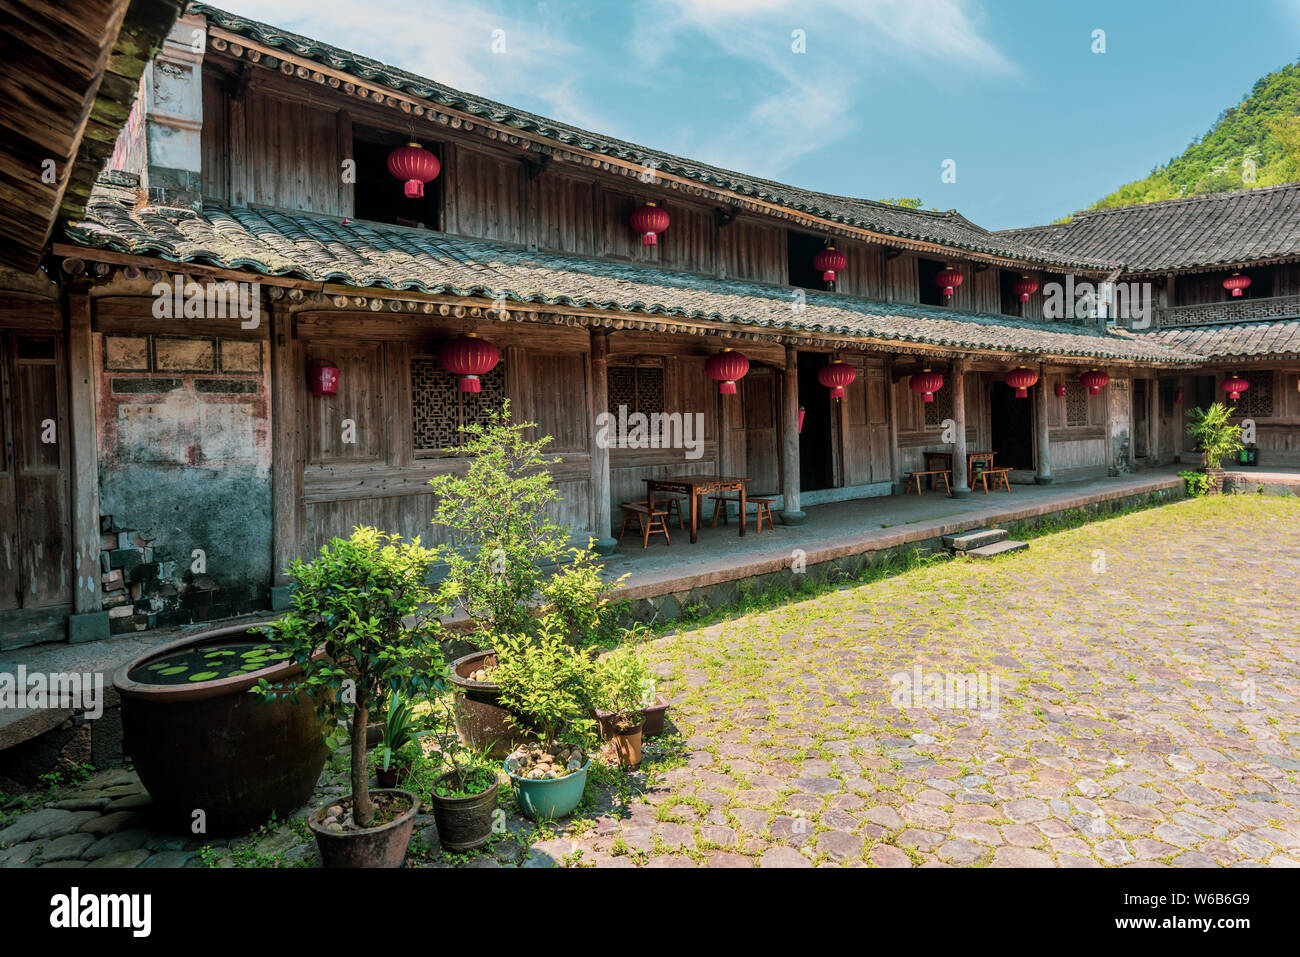 Paysage de l'Dingbutou de Cangnan, village près de la ville de Wenzhou, Zhejiang Province de Chine orientale, le 29 mai 2018. Dingbutou, village à 23 kilomètres Banque D'Images